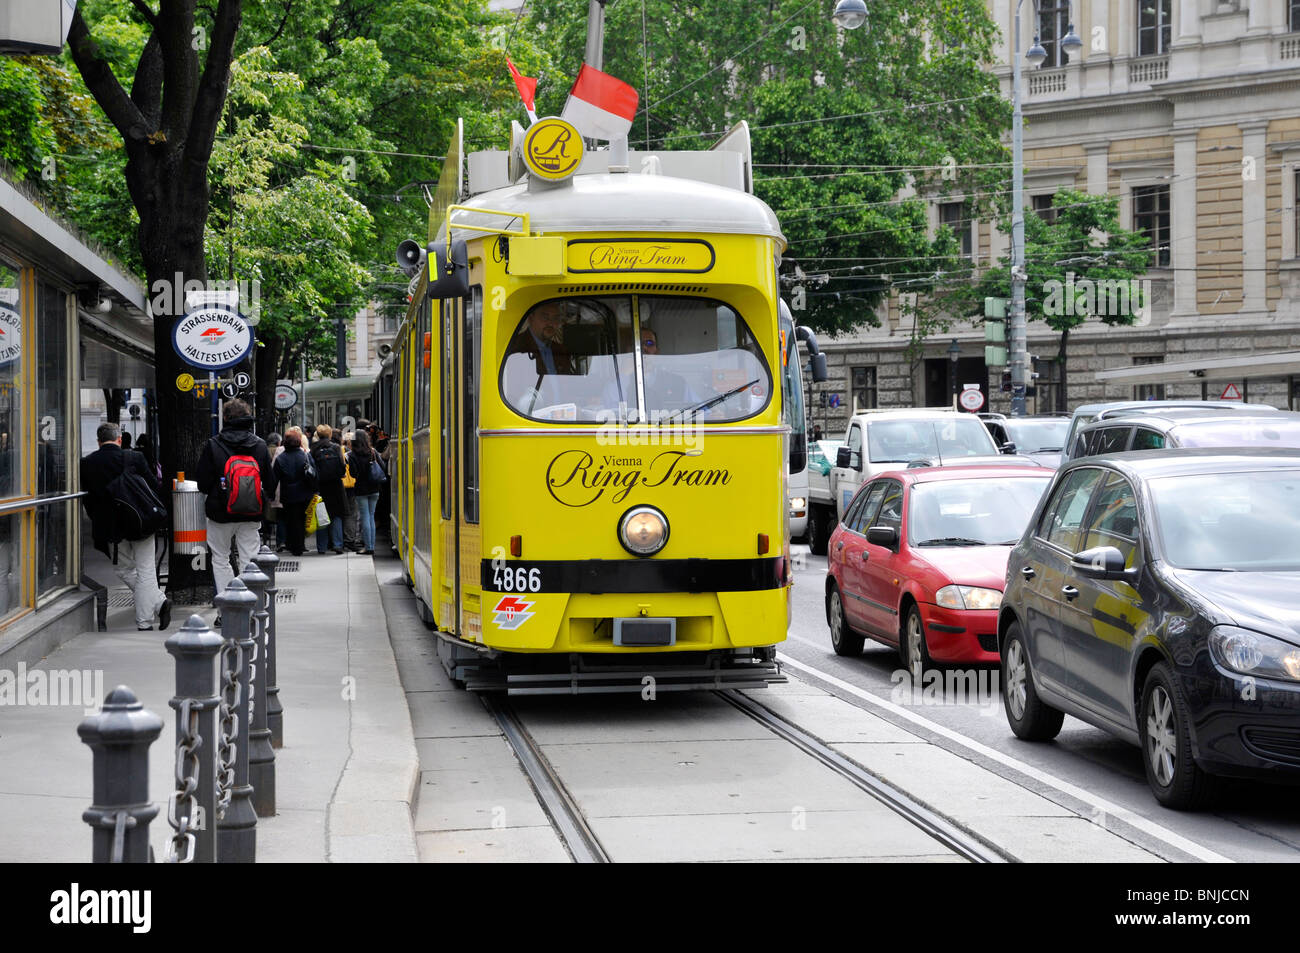 Rue et tramway jaune, Vienne, Autriche, Europe Banque D'Images